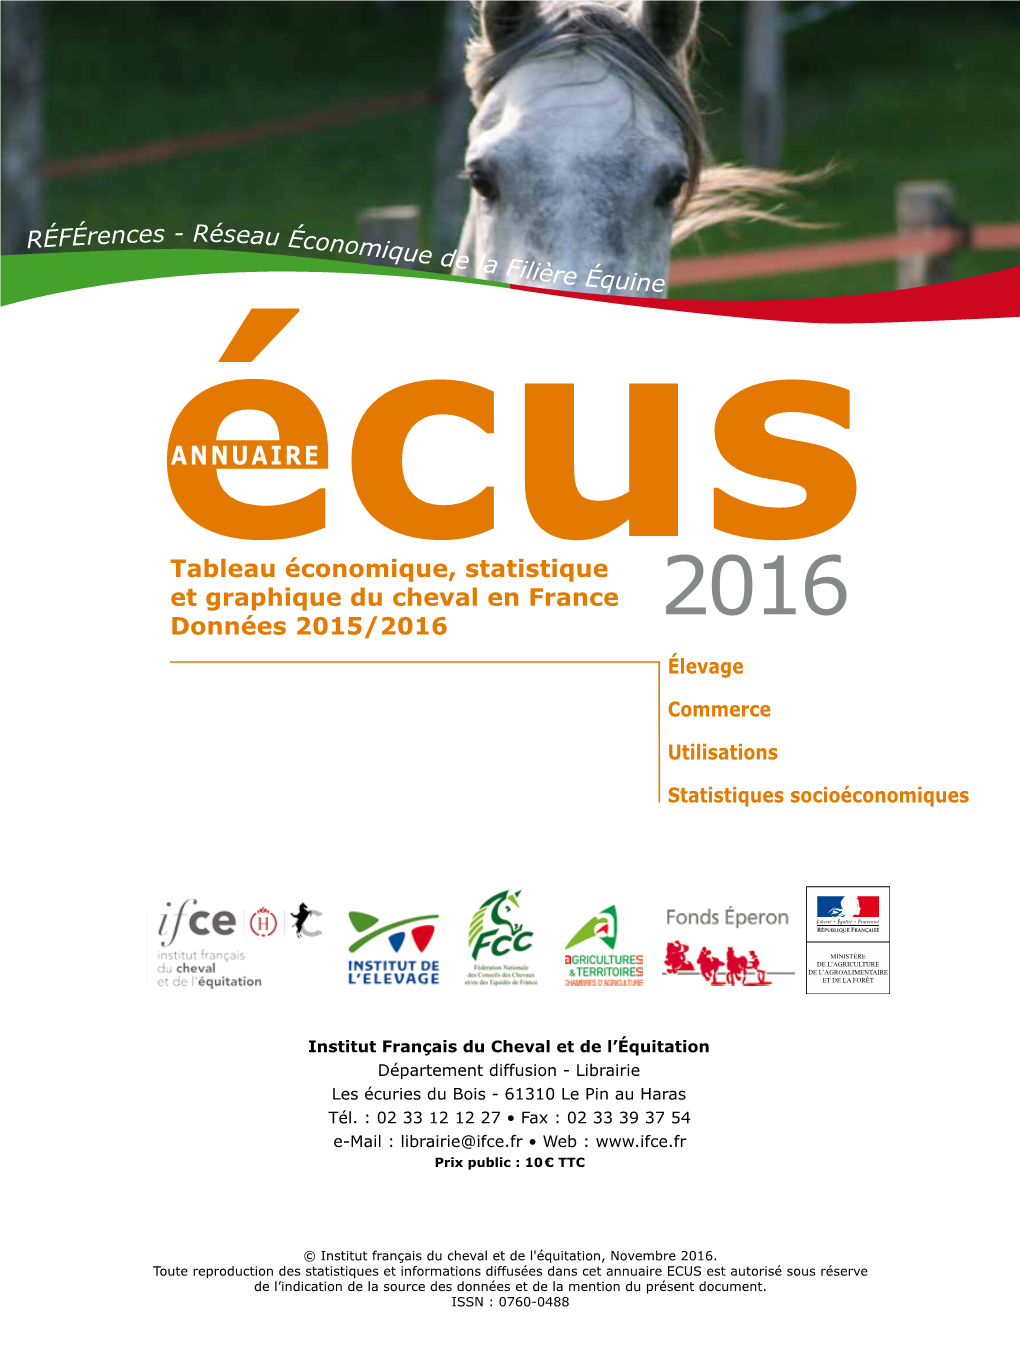 Oesc-Annuaire-Ecus-2016.Pdf